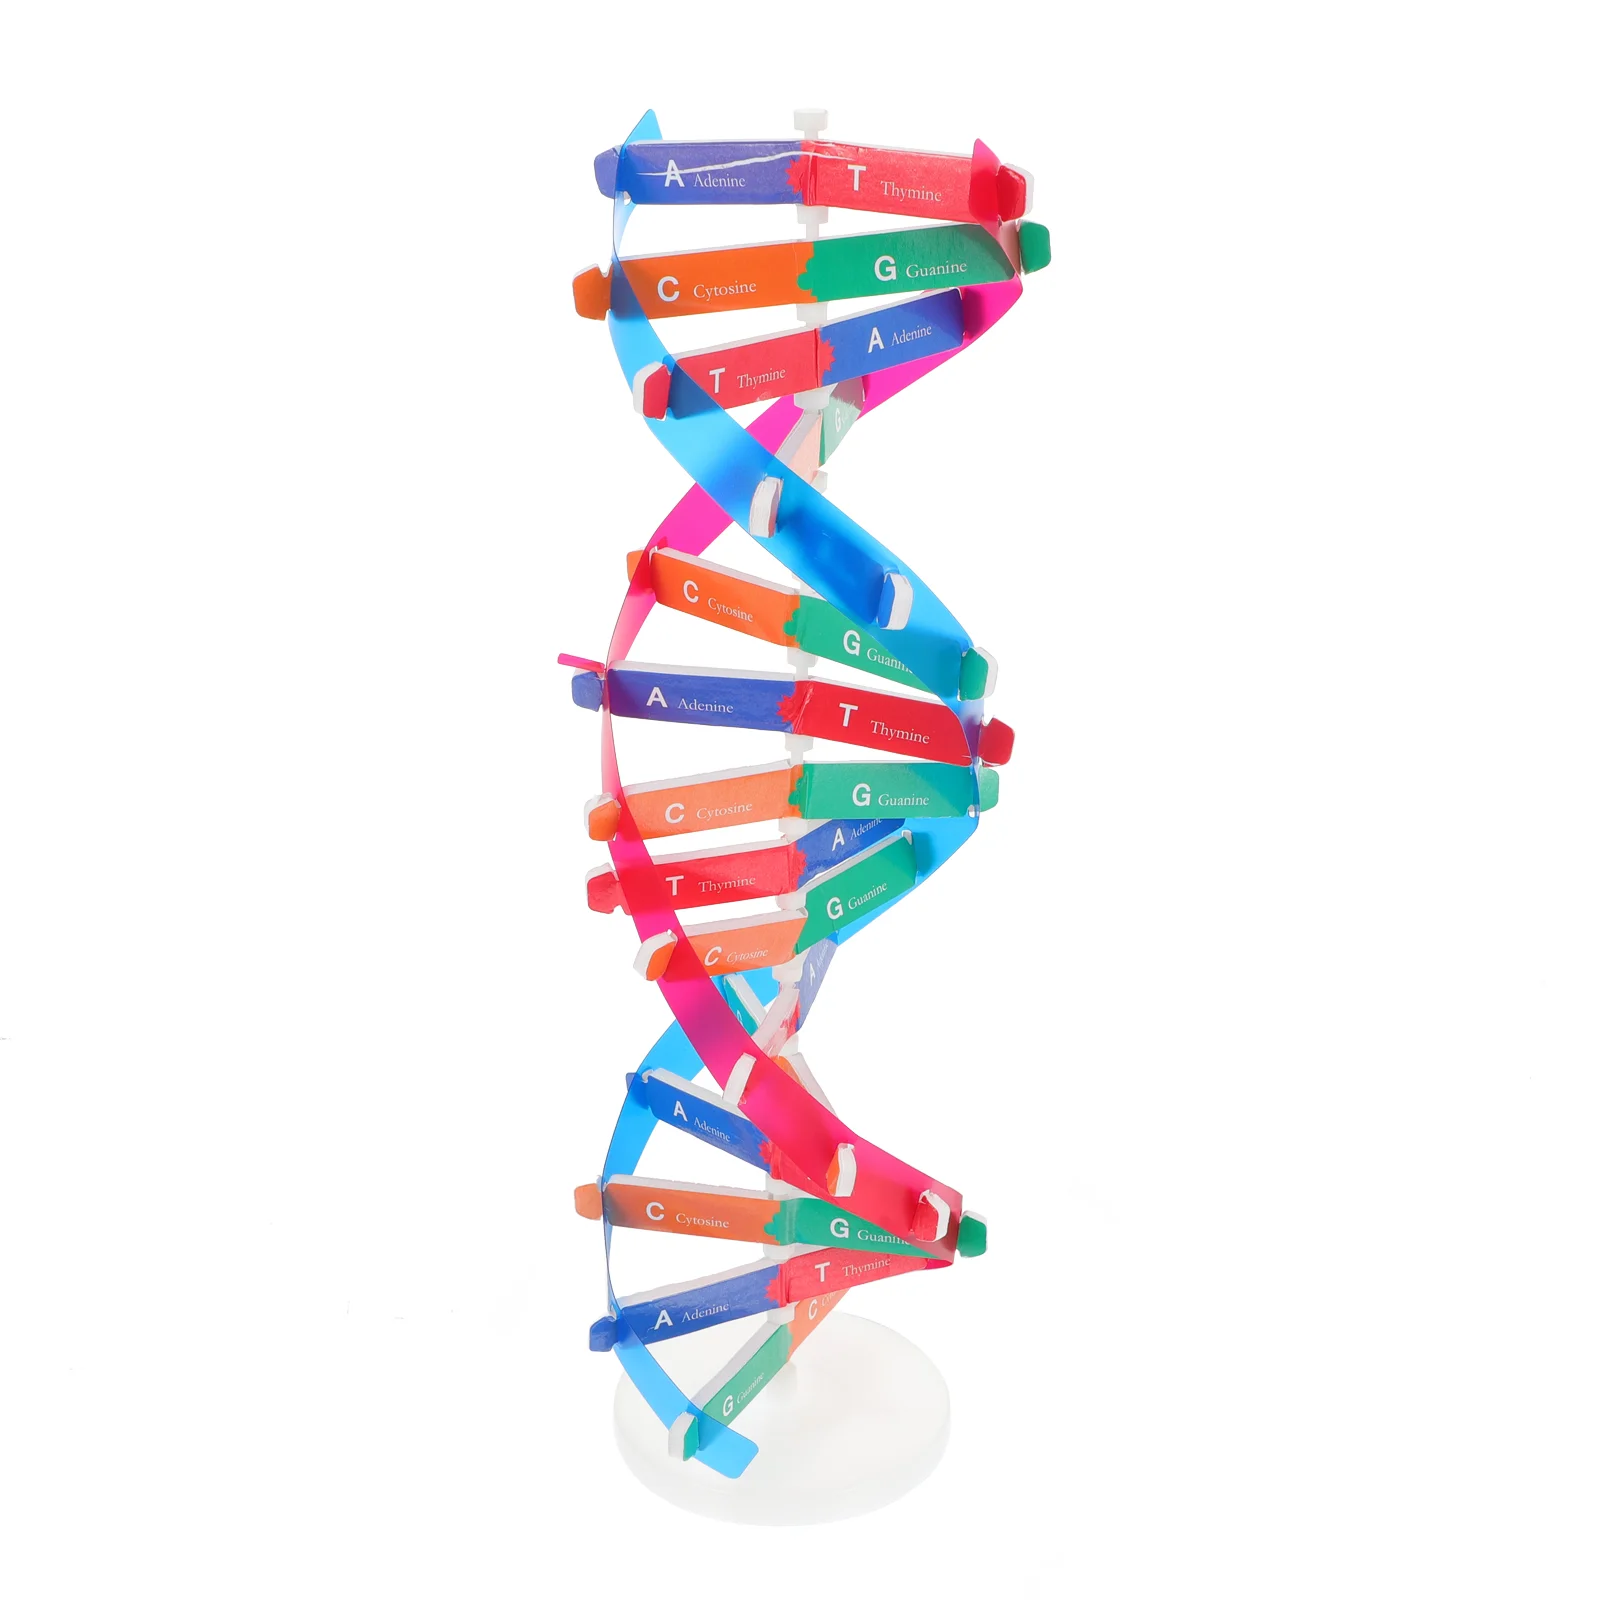 

Модель ДНК с двойной завиткой, детали, учебный инструмент для изучения науки, учебный инструмент в сборе